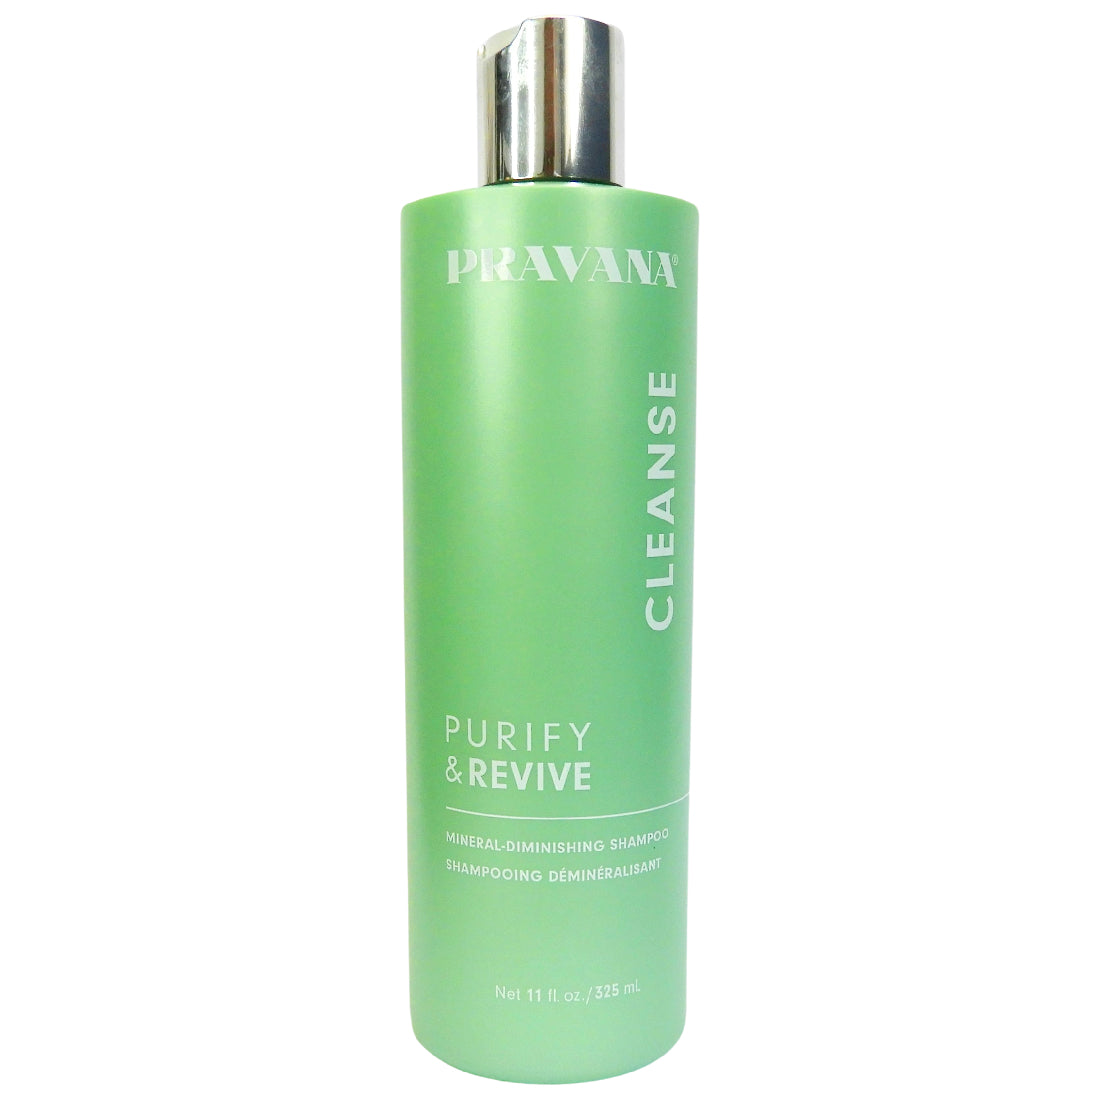 Purify & Revive Cleanse 325ml - Shampoo que limpia profundamente sin retirar la humectación